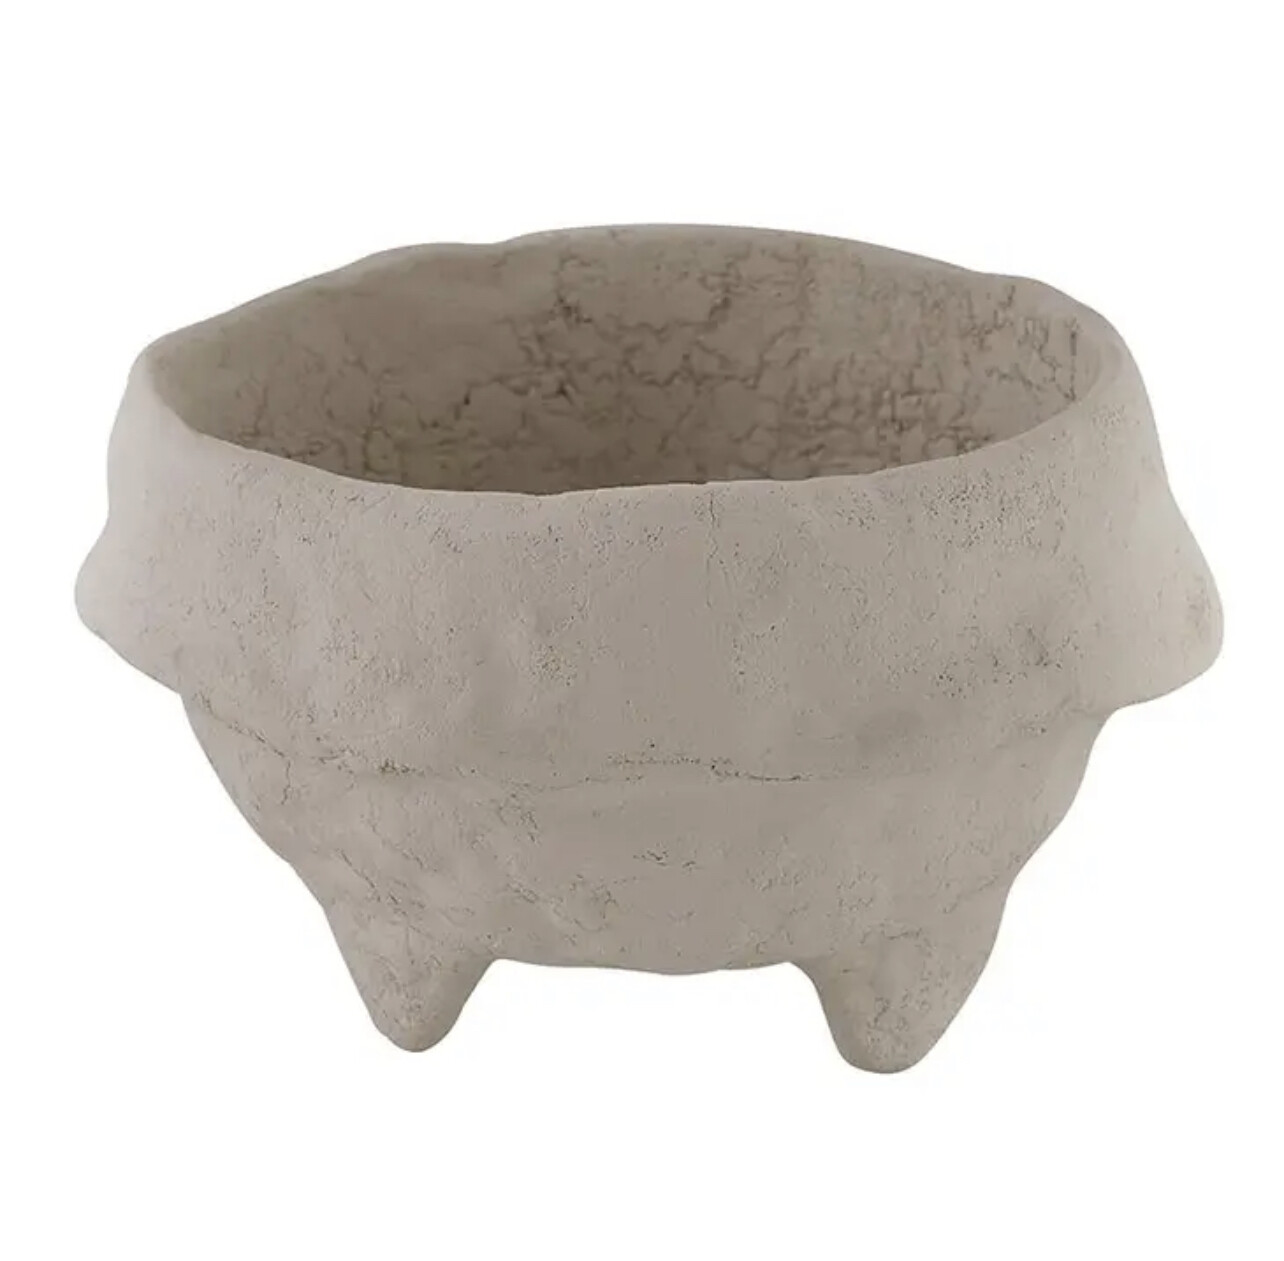 Paper Mache Bowl - Small Grey